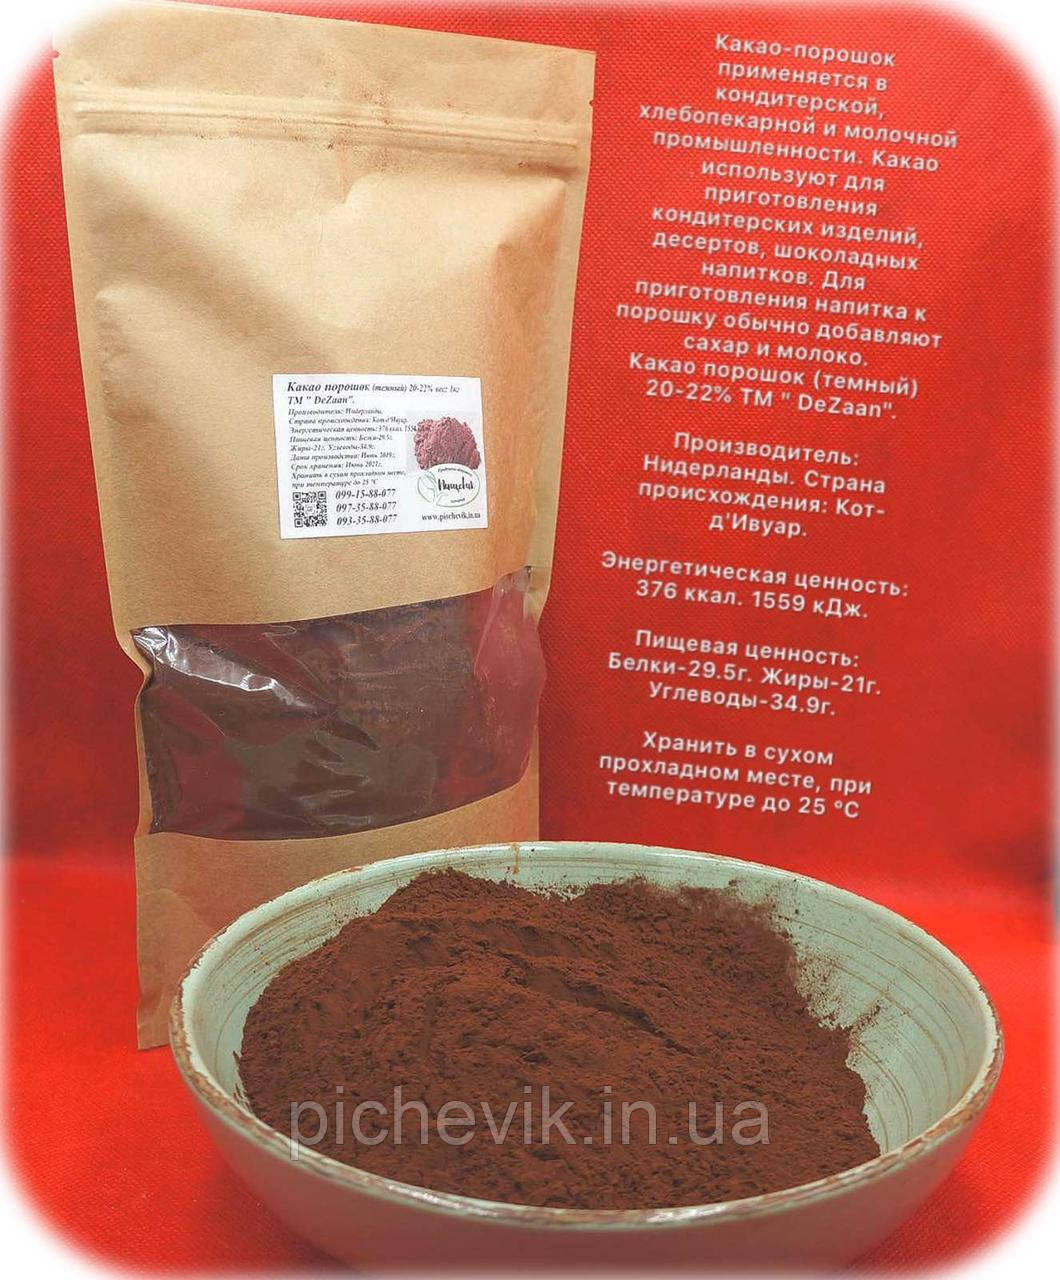 Какао порошок темний 20-22% (Нідерланди) ТМ DeZaan вага: 1кг.